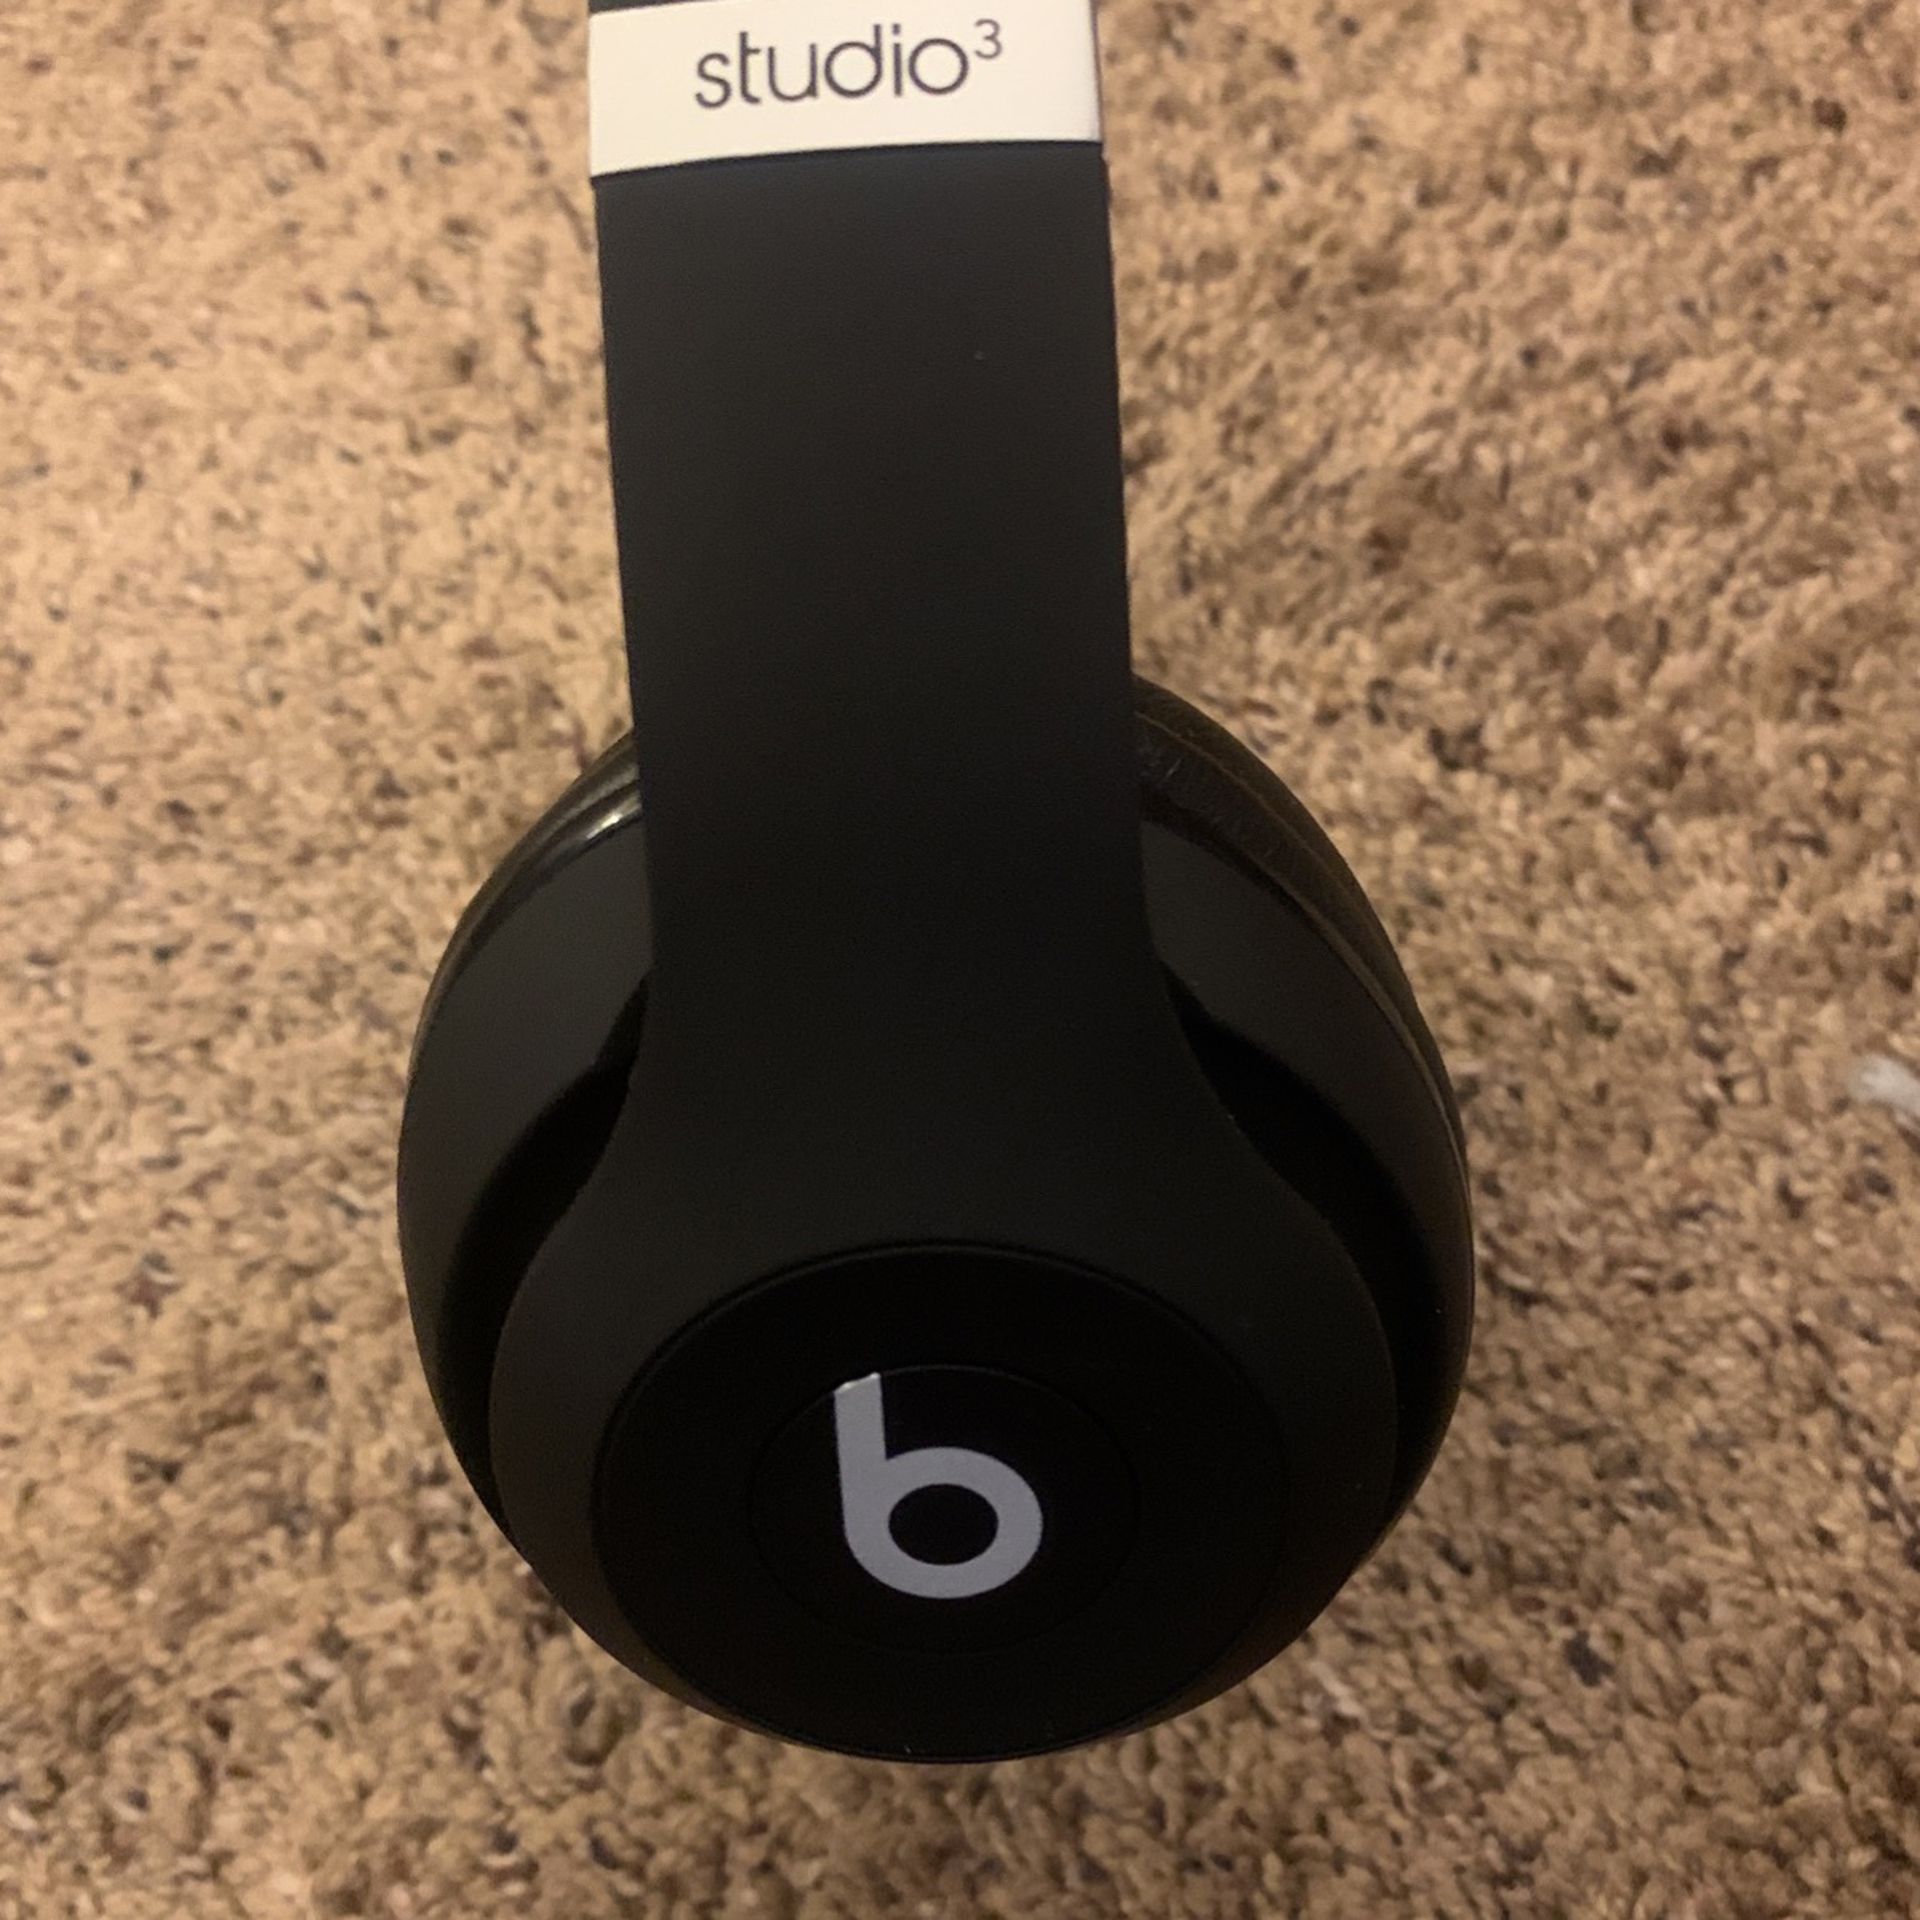 Studio 3 Beats Headphones (Black)